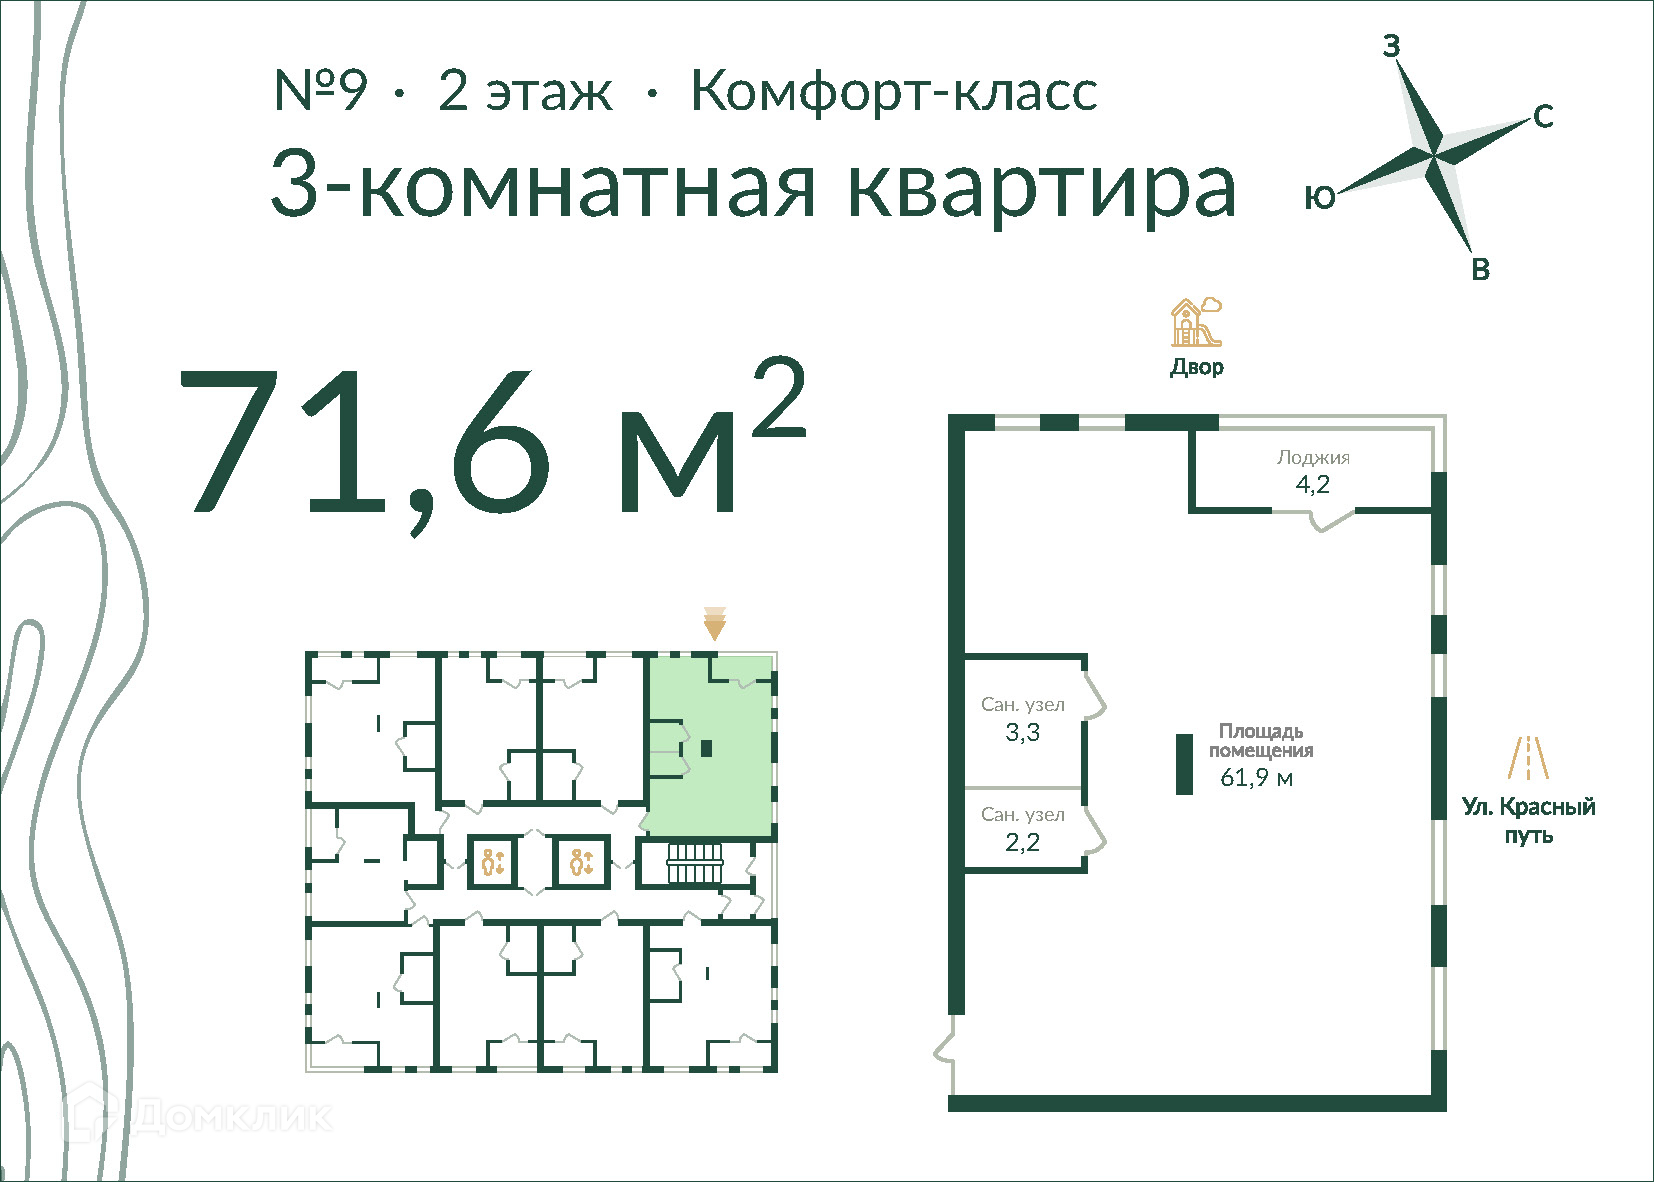 3-комнатная квартира 71м2 ЖК Экопарк